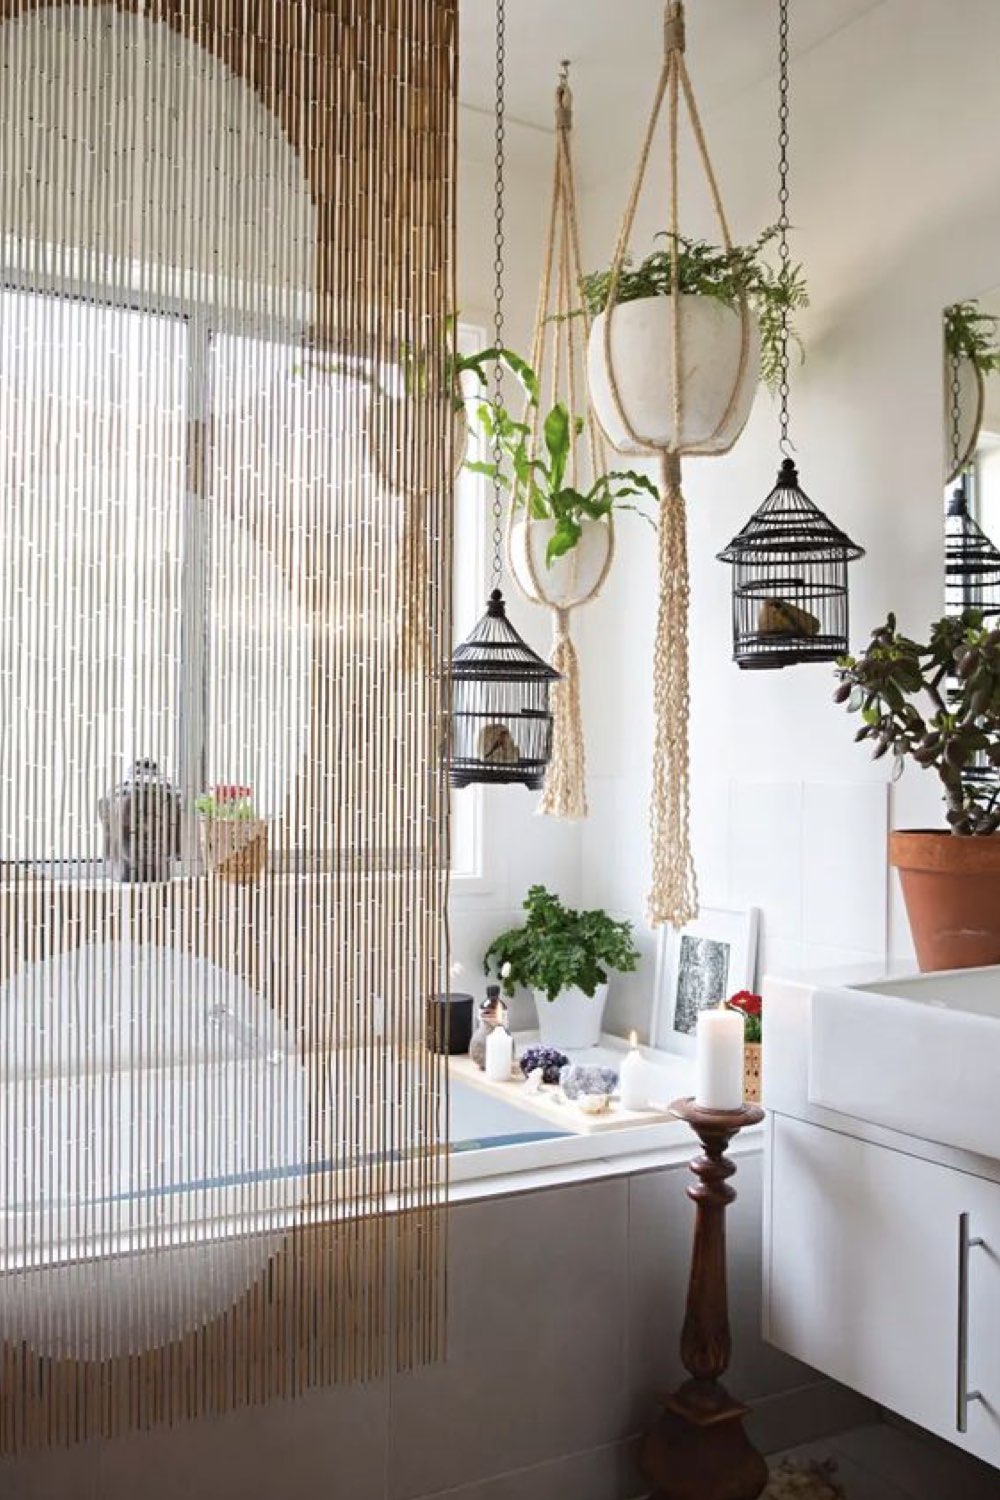 salle de bain decoration reussie exemple style boho chic lumineux baignoire rideau macramé plantes suspendues